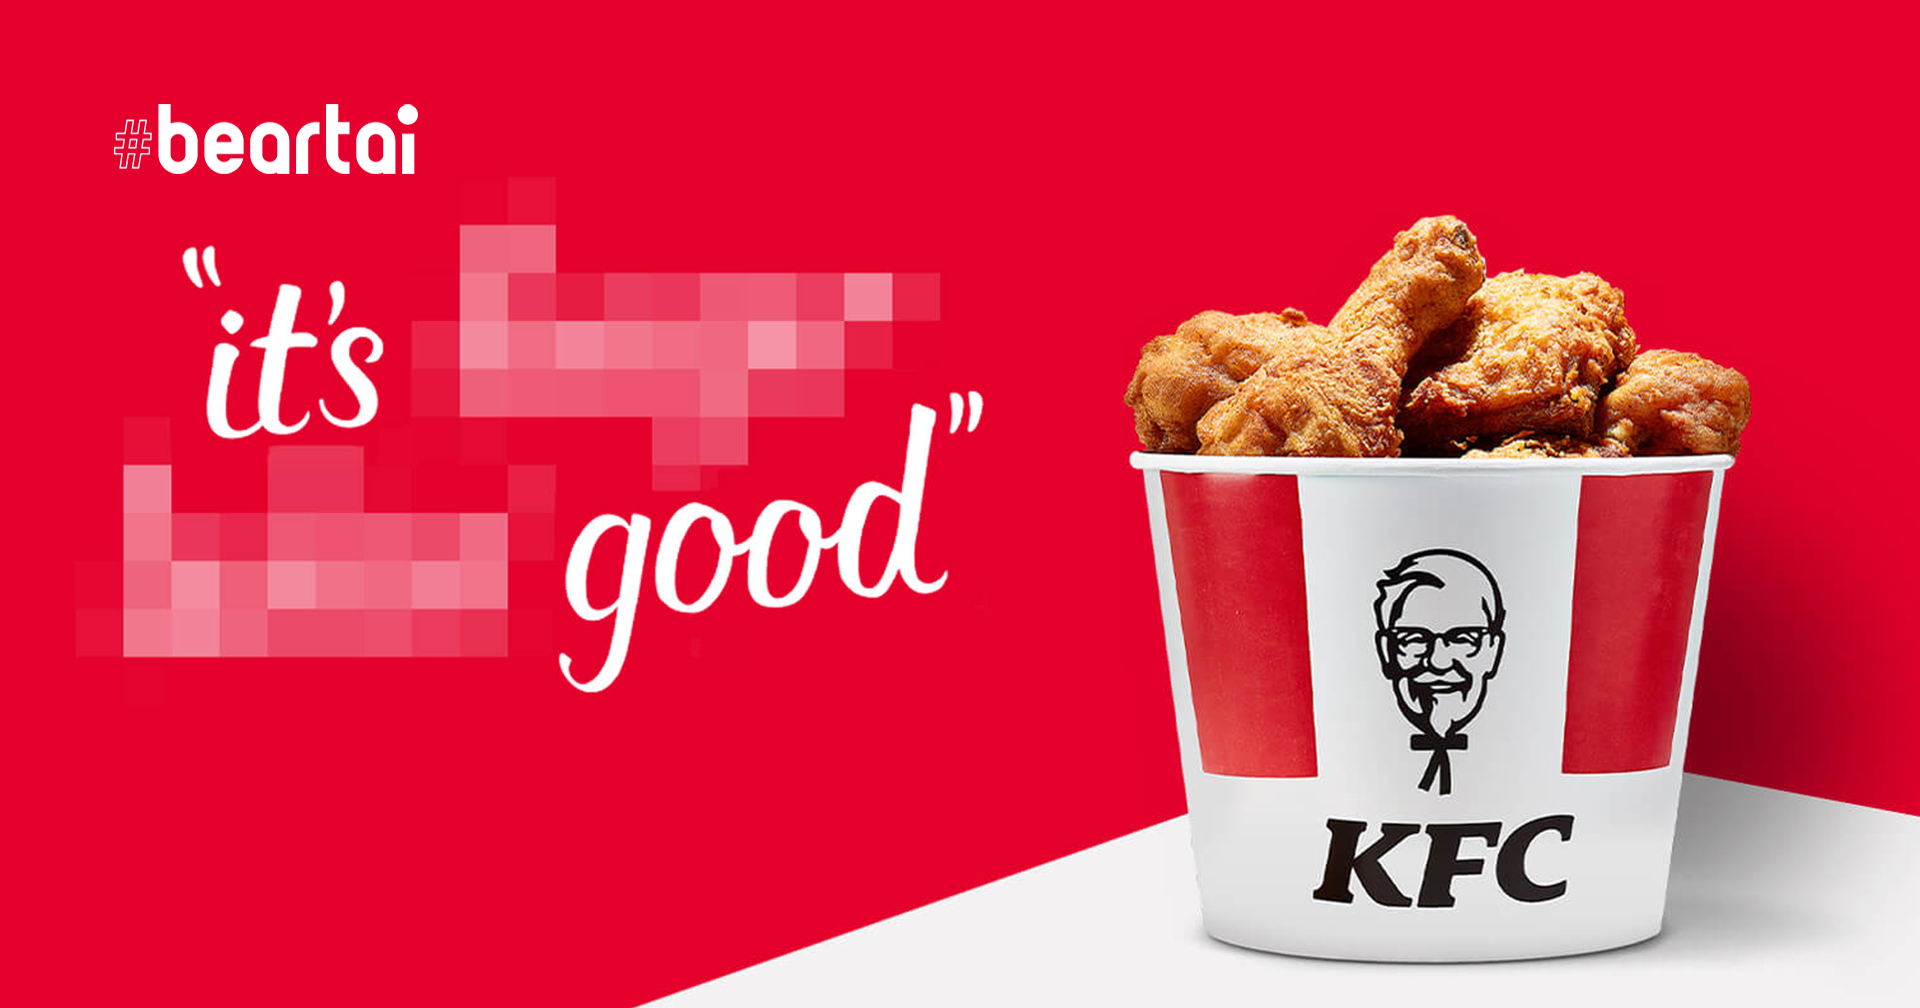 KFC ตปท. ประกาศหยุดใช้สโลแกน “Finger Linkin’ Good” ชั่วคราว เพื่อสุขอนามัยของทุกคน